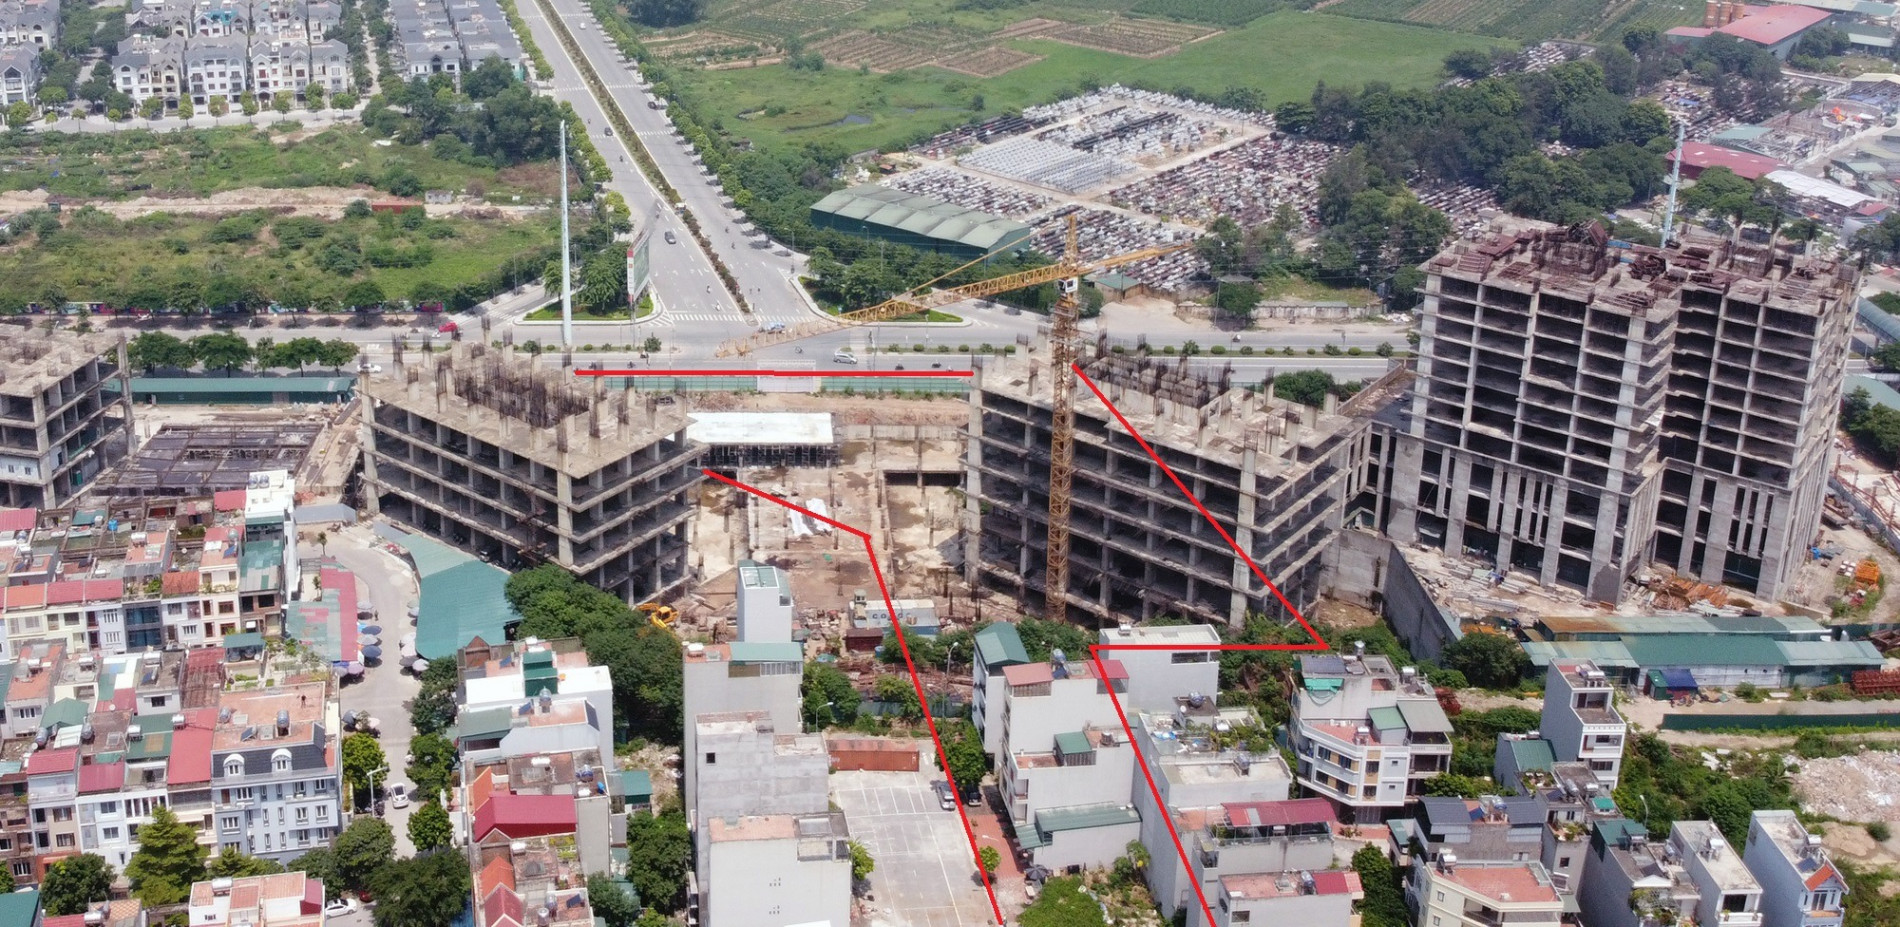 Những khu đất sắp thu hồi để mở đường ở quận Hà Đông, Hà Nội (phần 1)